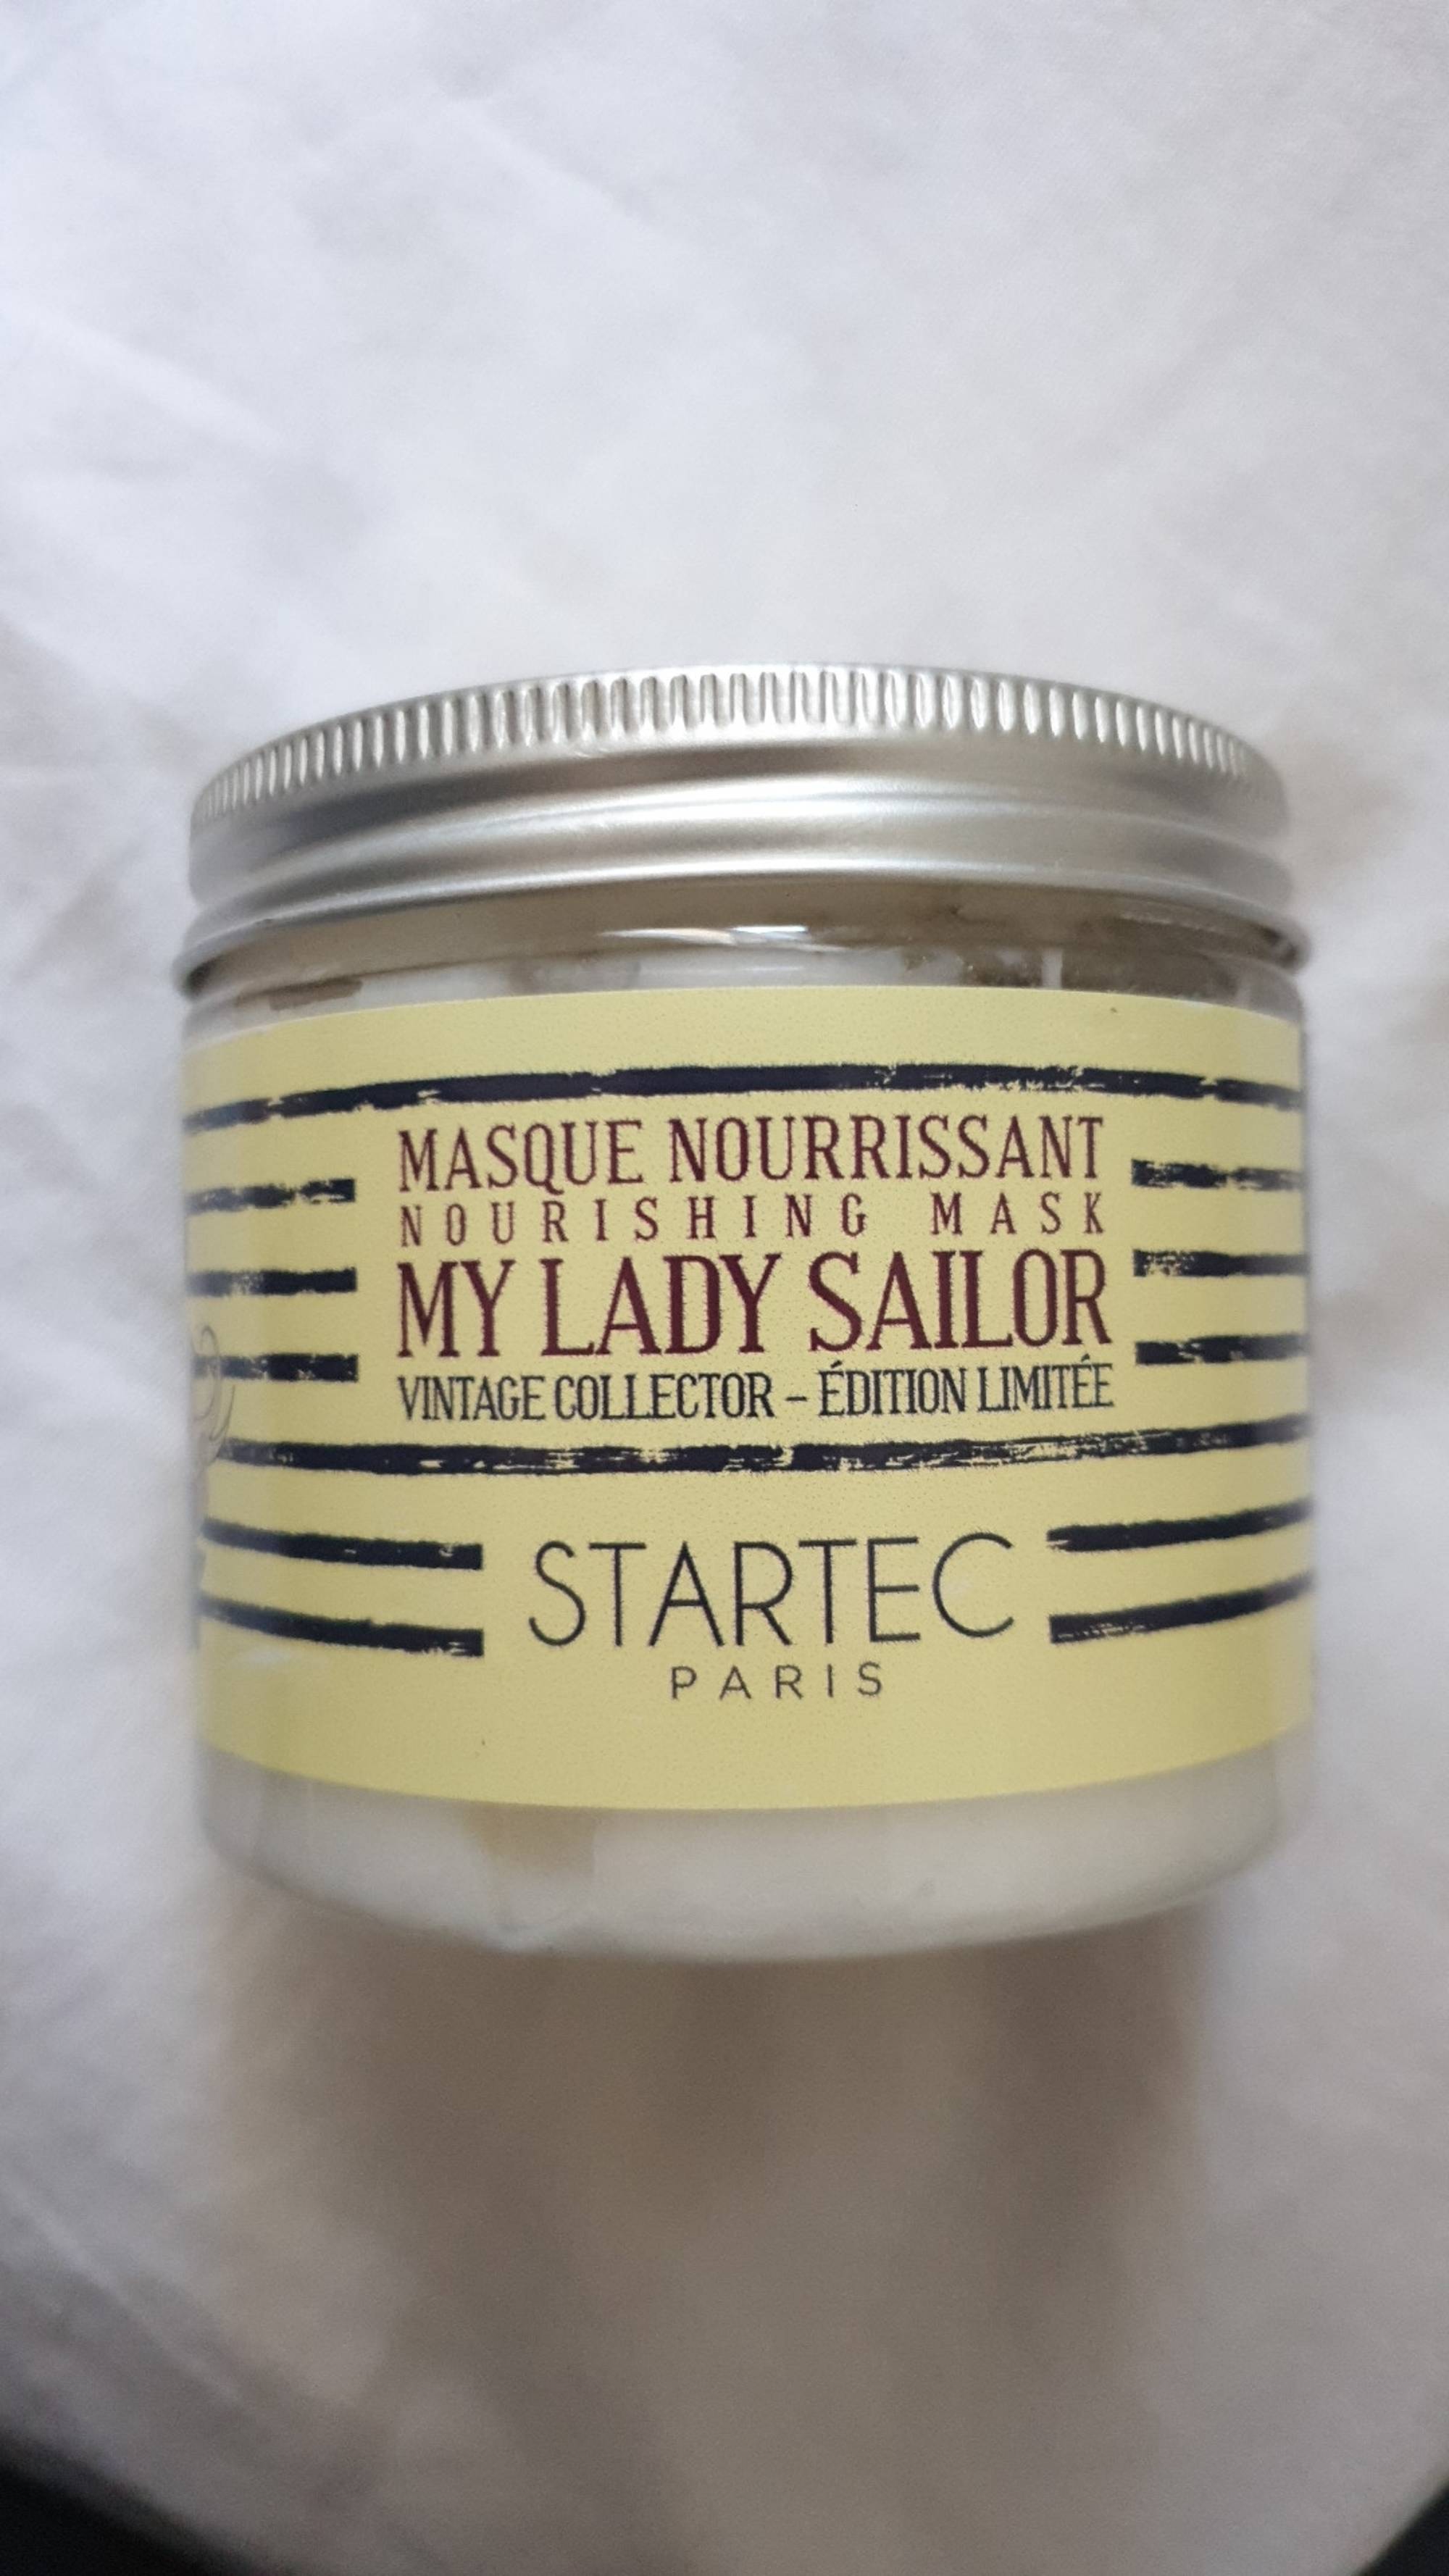 STARTEC - My lady sailor - Masque nourrissant 